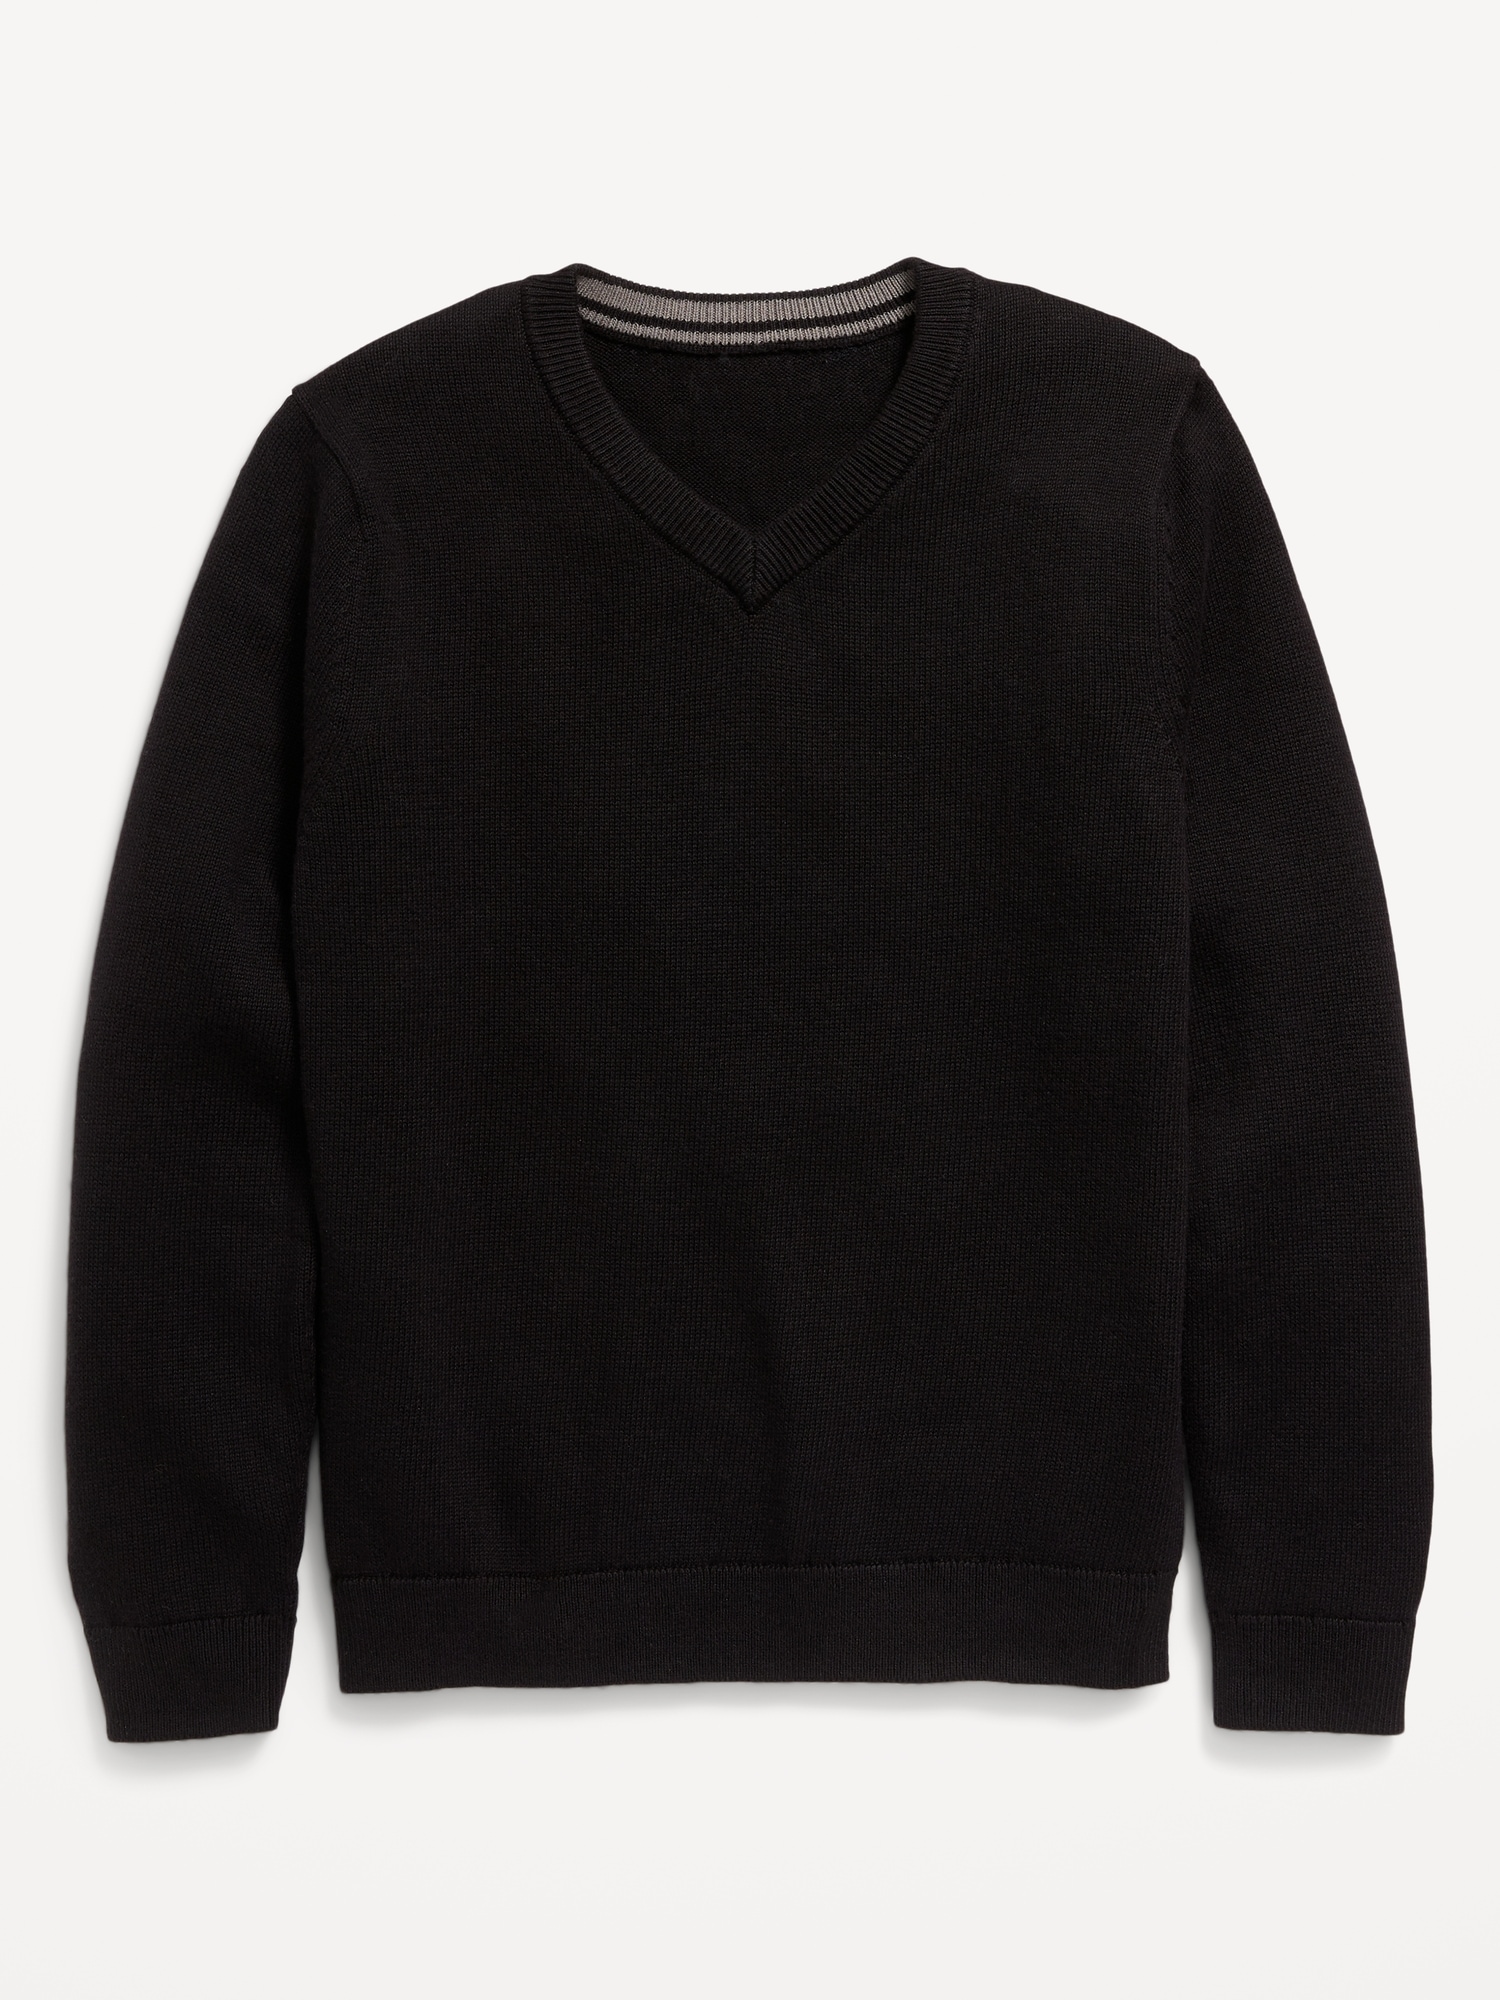 V-Neck Sweater for Boys